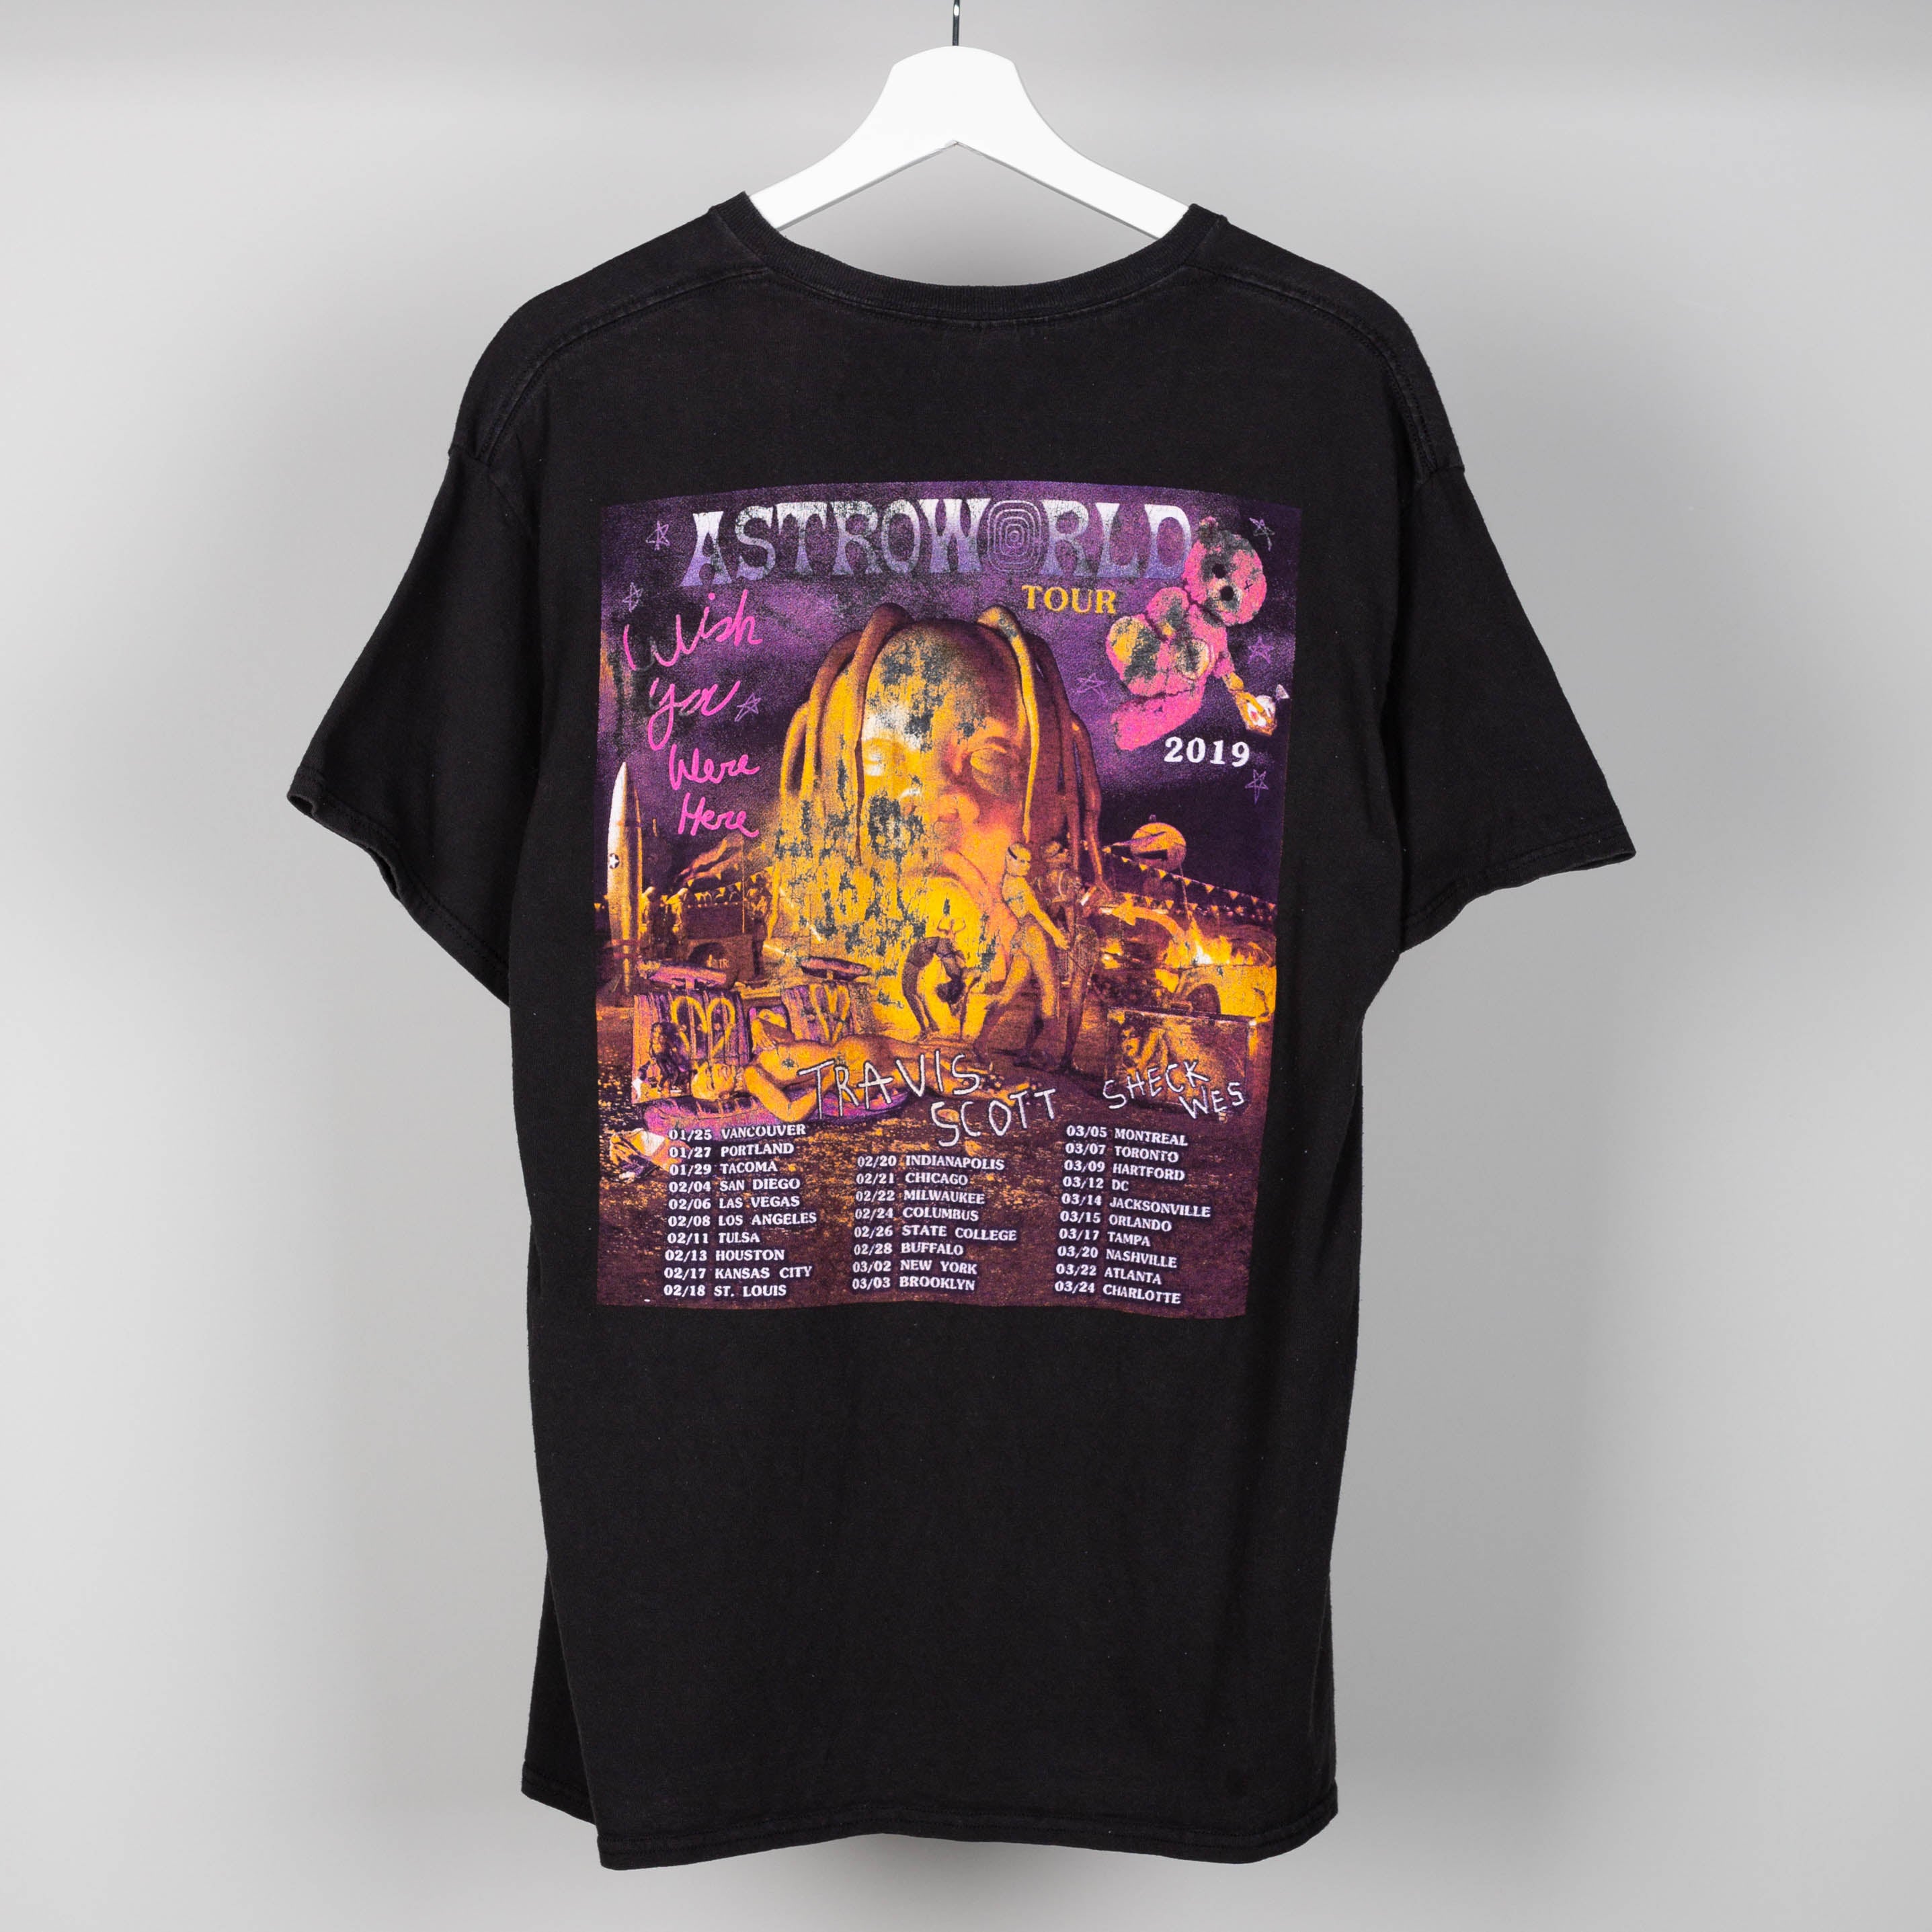 Astroworld Rapper Travis Scott Tour Shirt, Astroworld Merch - Ink In Action